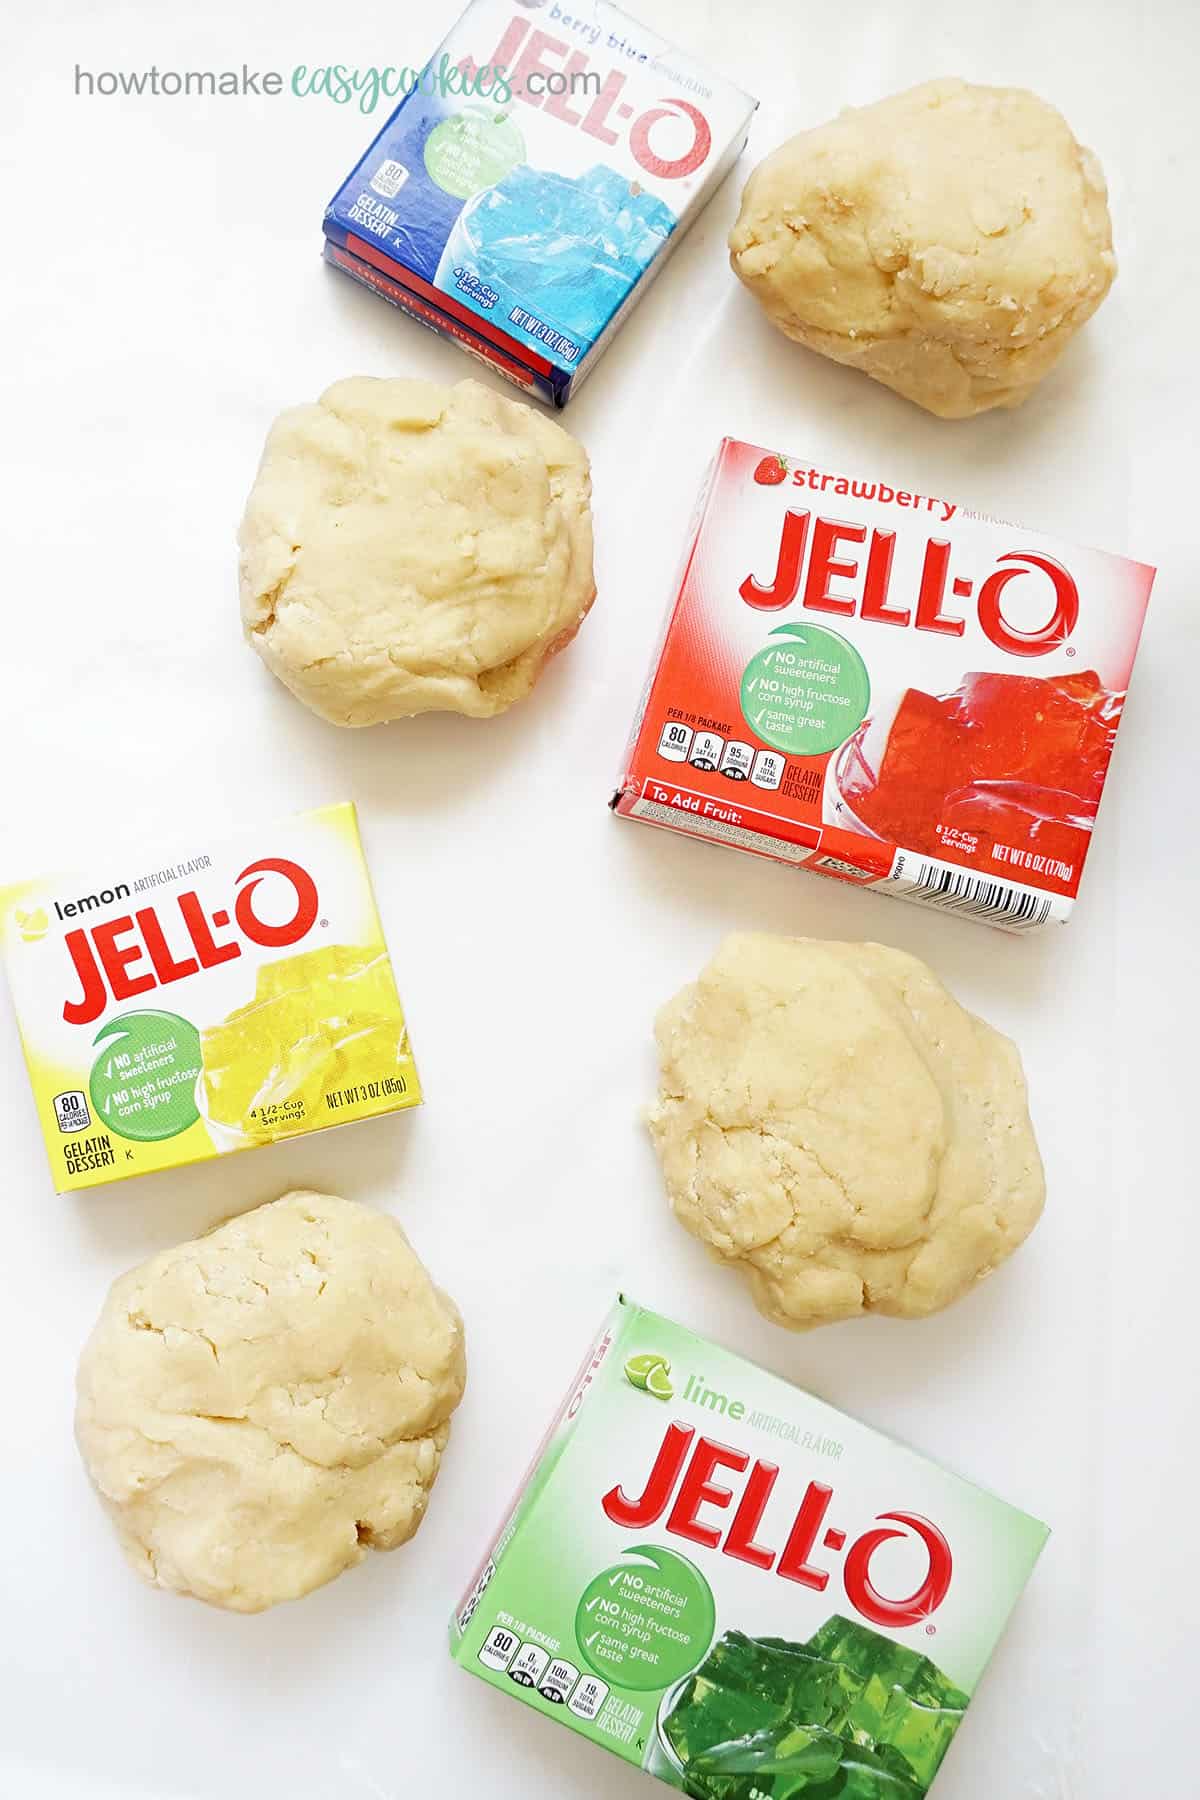 Jello boxes and sugar cookie dough 